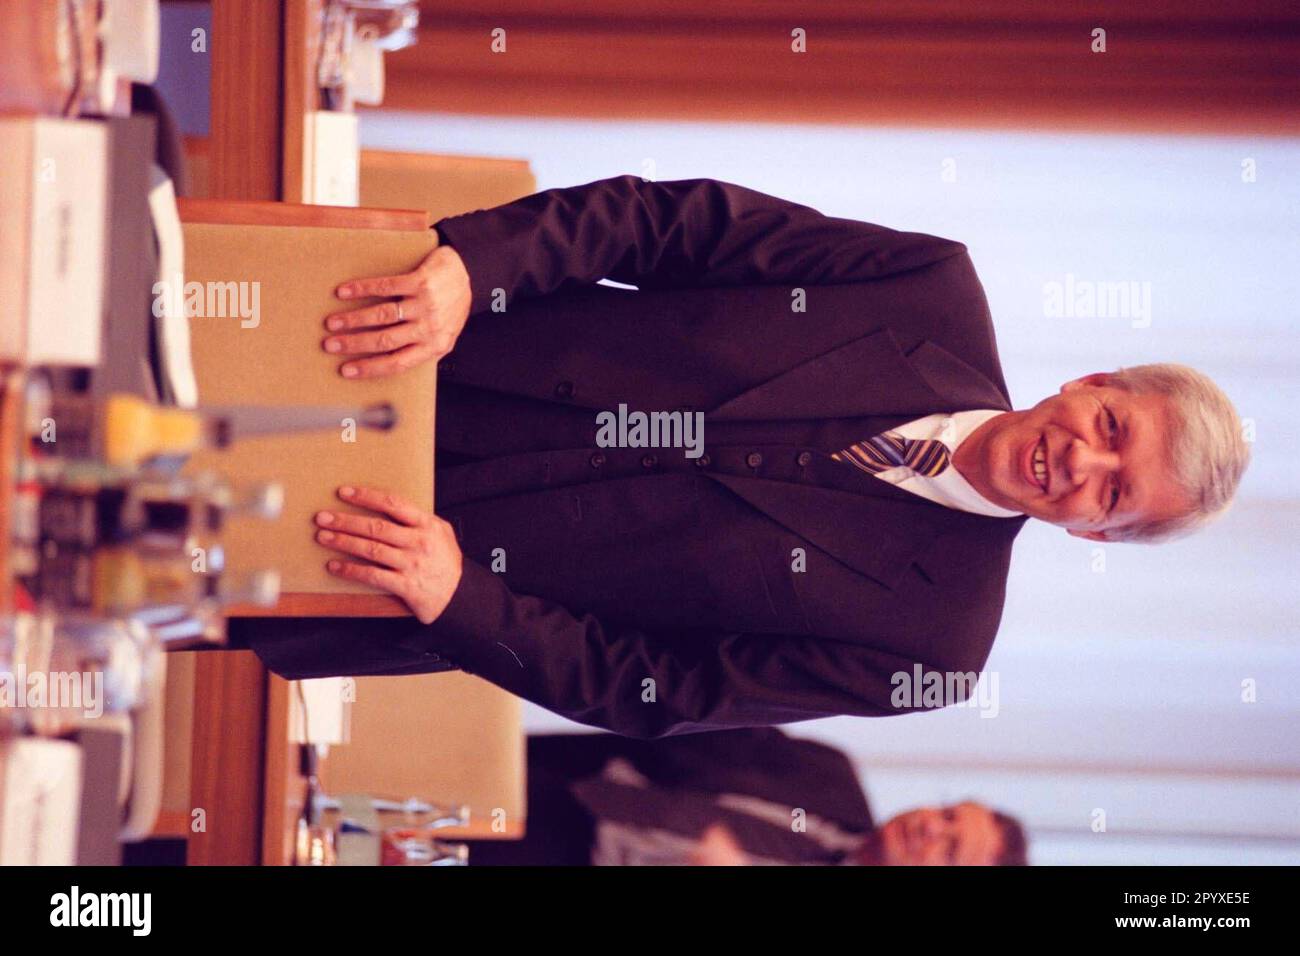 Werner Müller, Bundeswirtschaftsminister der SPD, vor Beginn der 44. Kabinettssitzung. [Maschinelle Übersetzung] Stockfoto